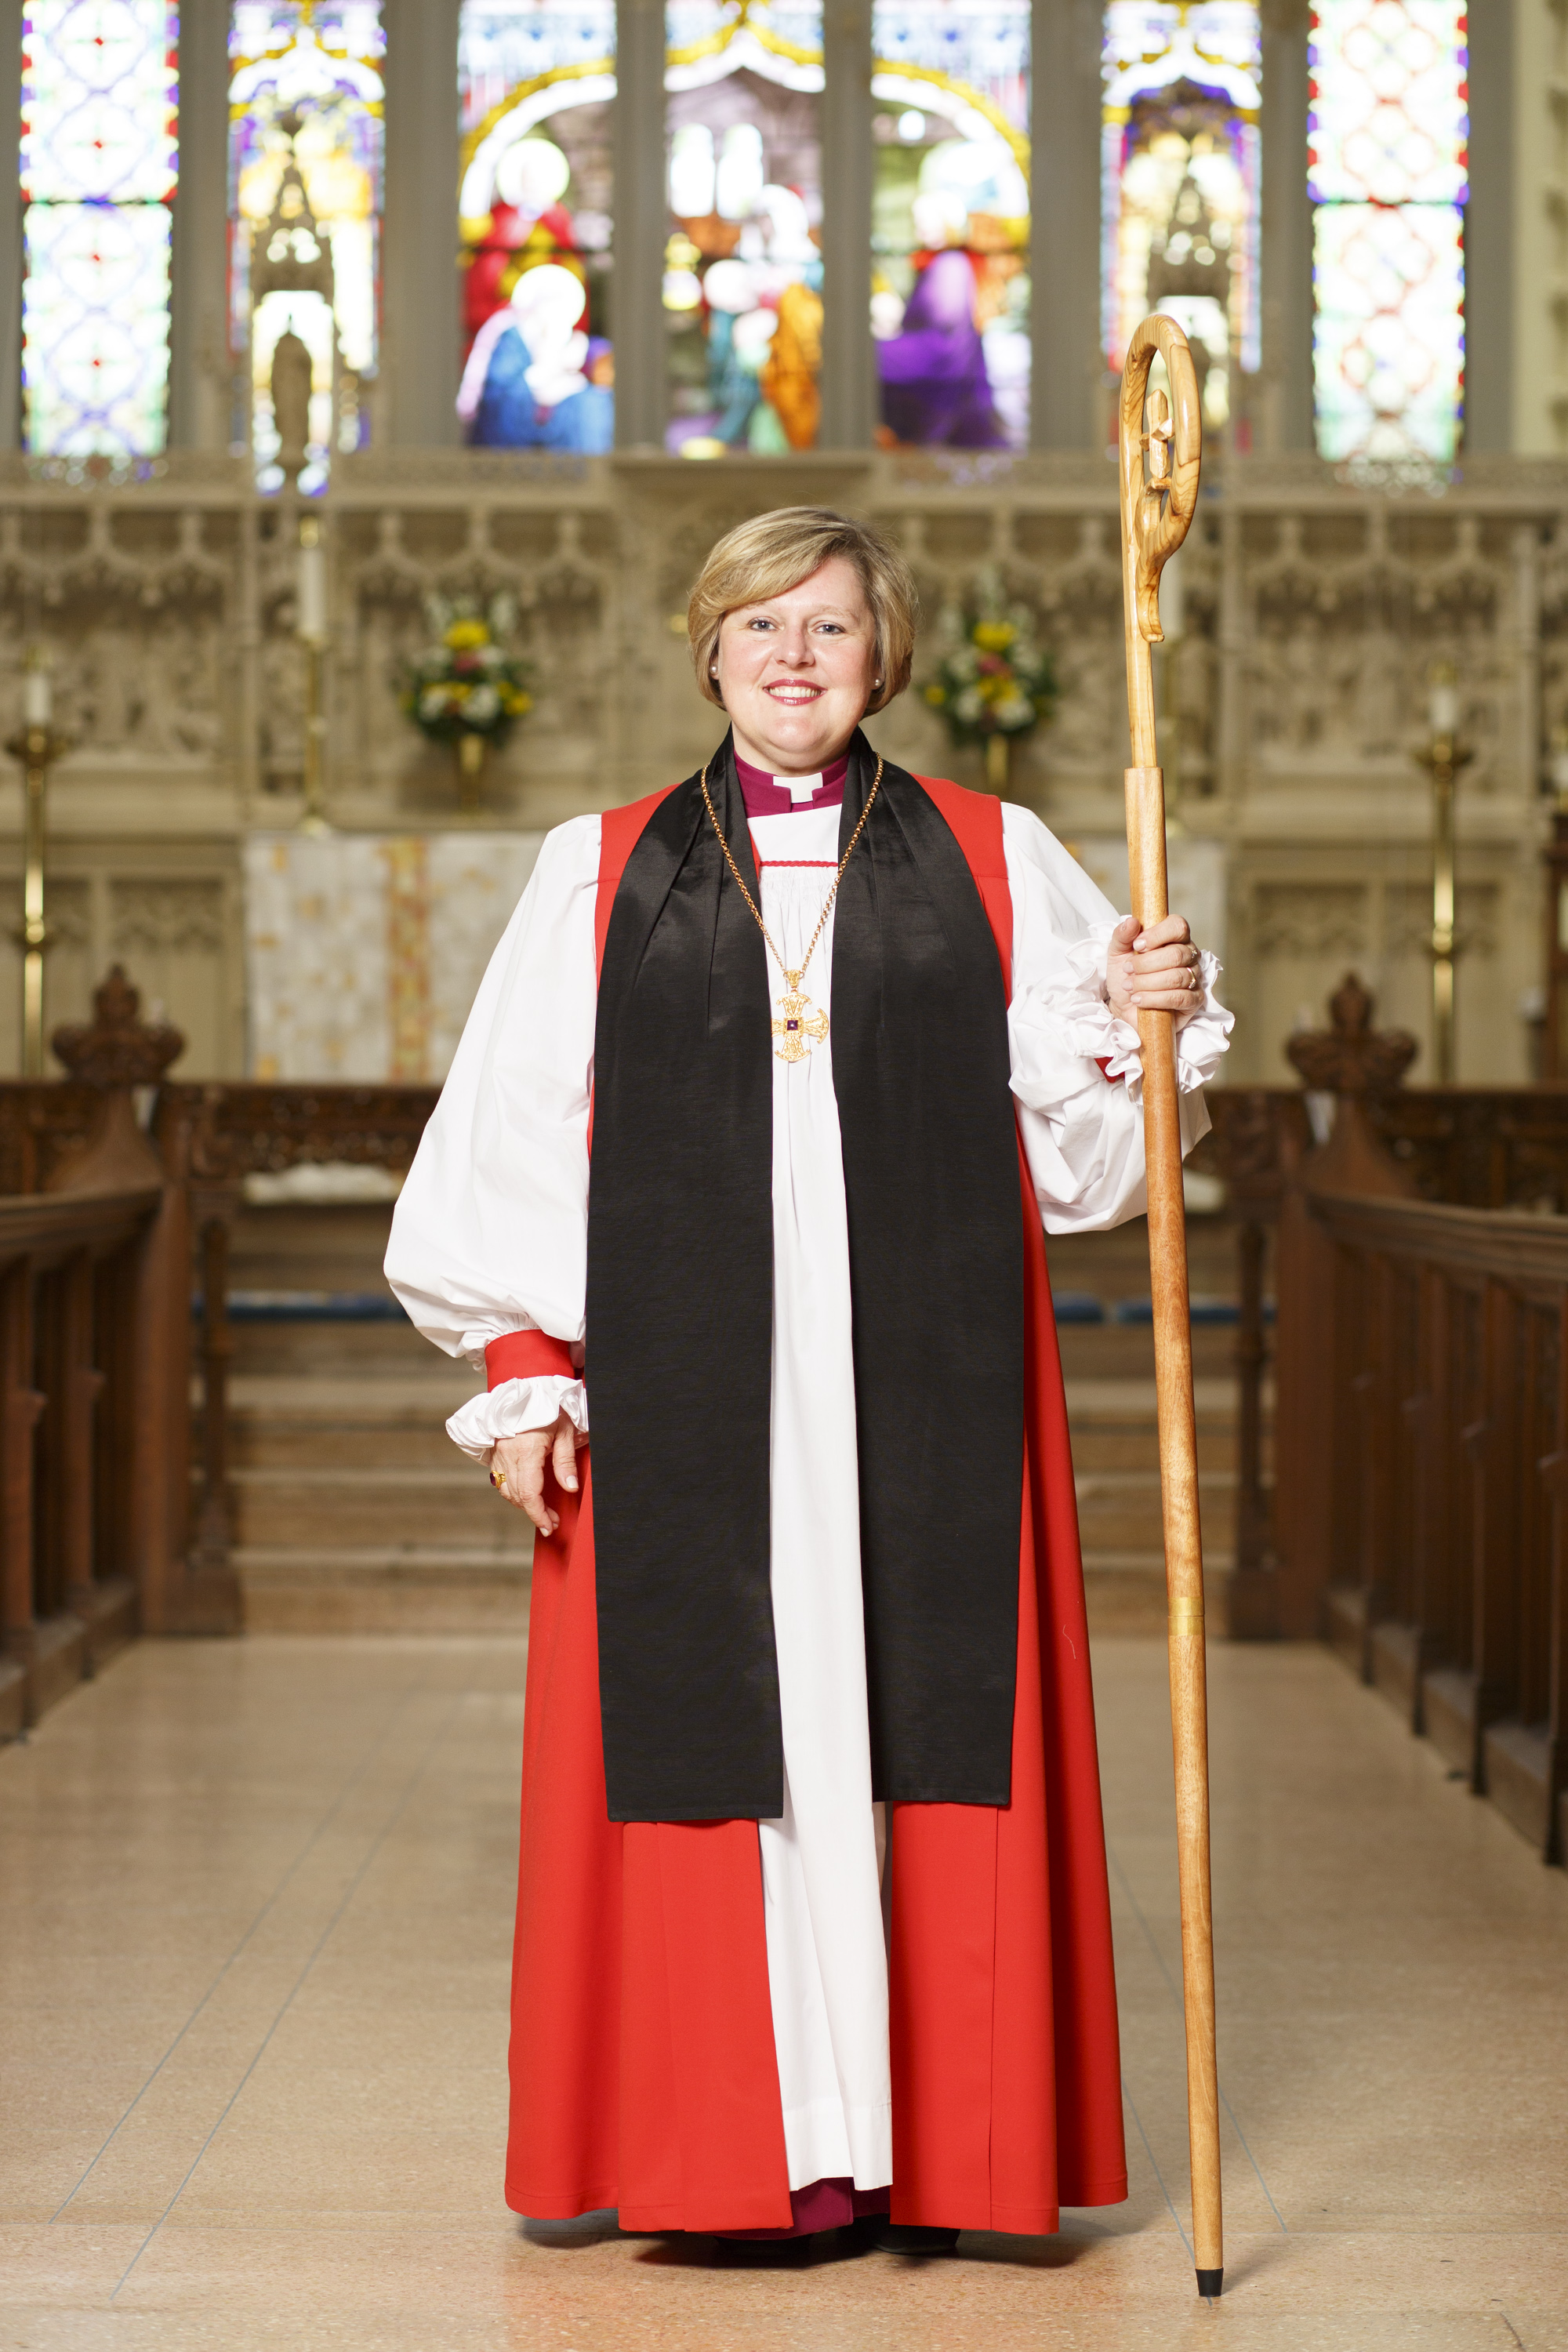 Bishop Susan Bell